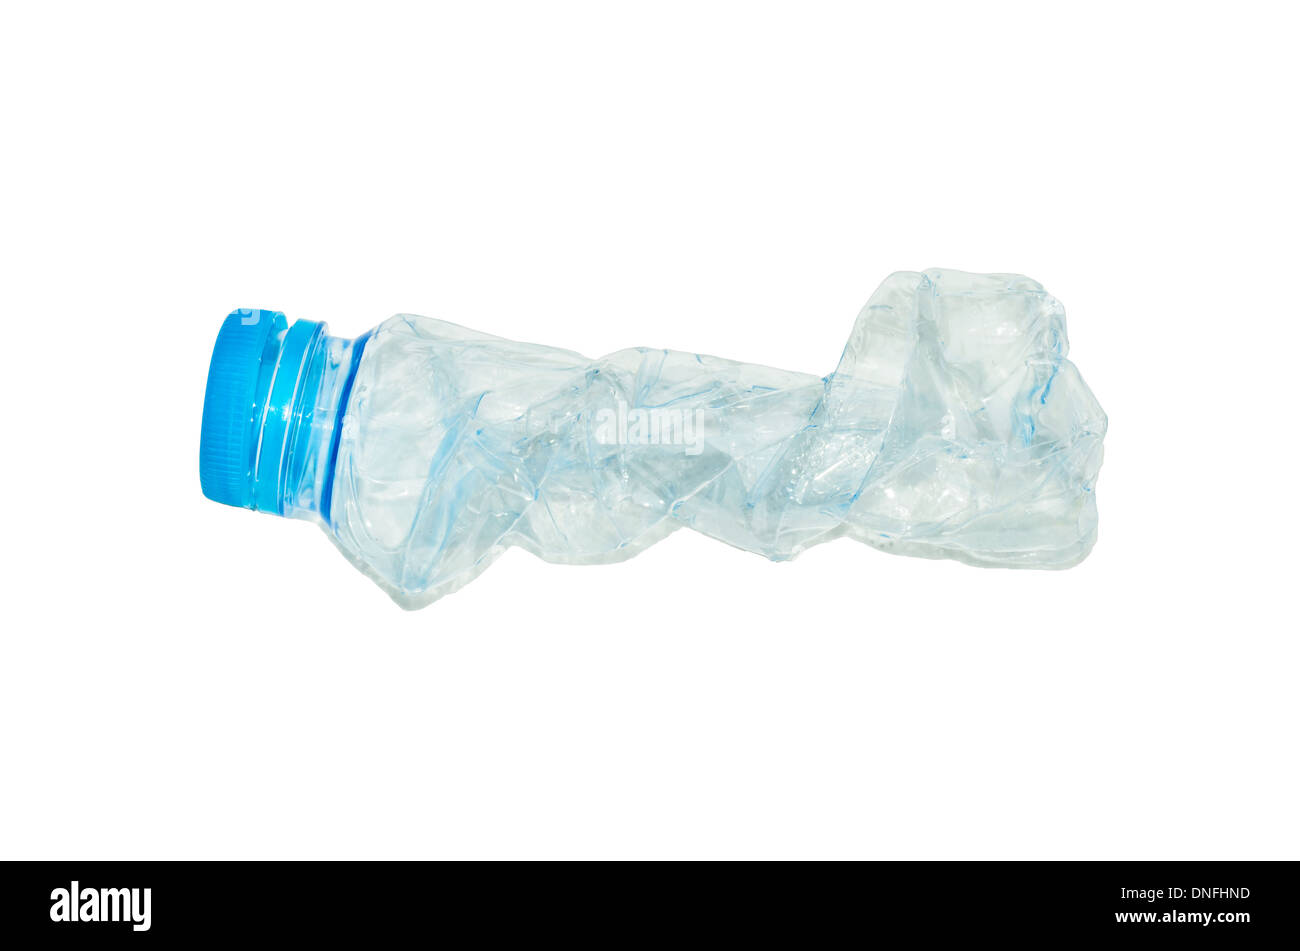 empty used plastic bottles Stock Photo